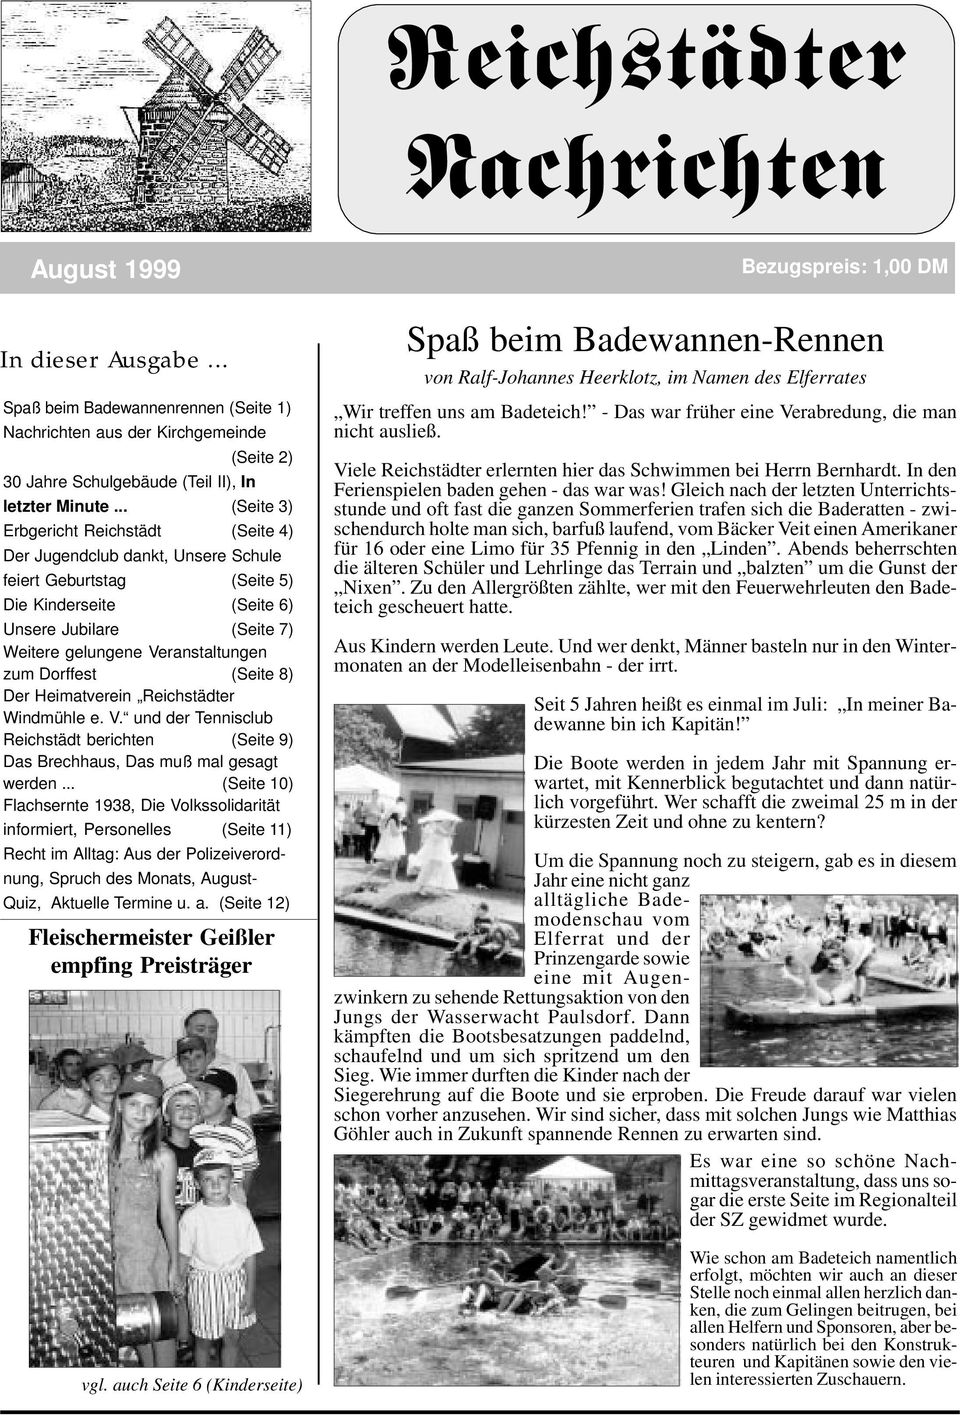 Dorffest (Seite 8) Der Heimatverein Reichstädter Windmühle e. V. und der Tennisclub Reichstädt berichten (Seite 9) Das Brechhaus, Das muß mal gesagt werden.